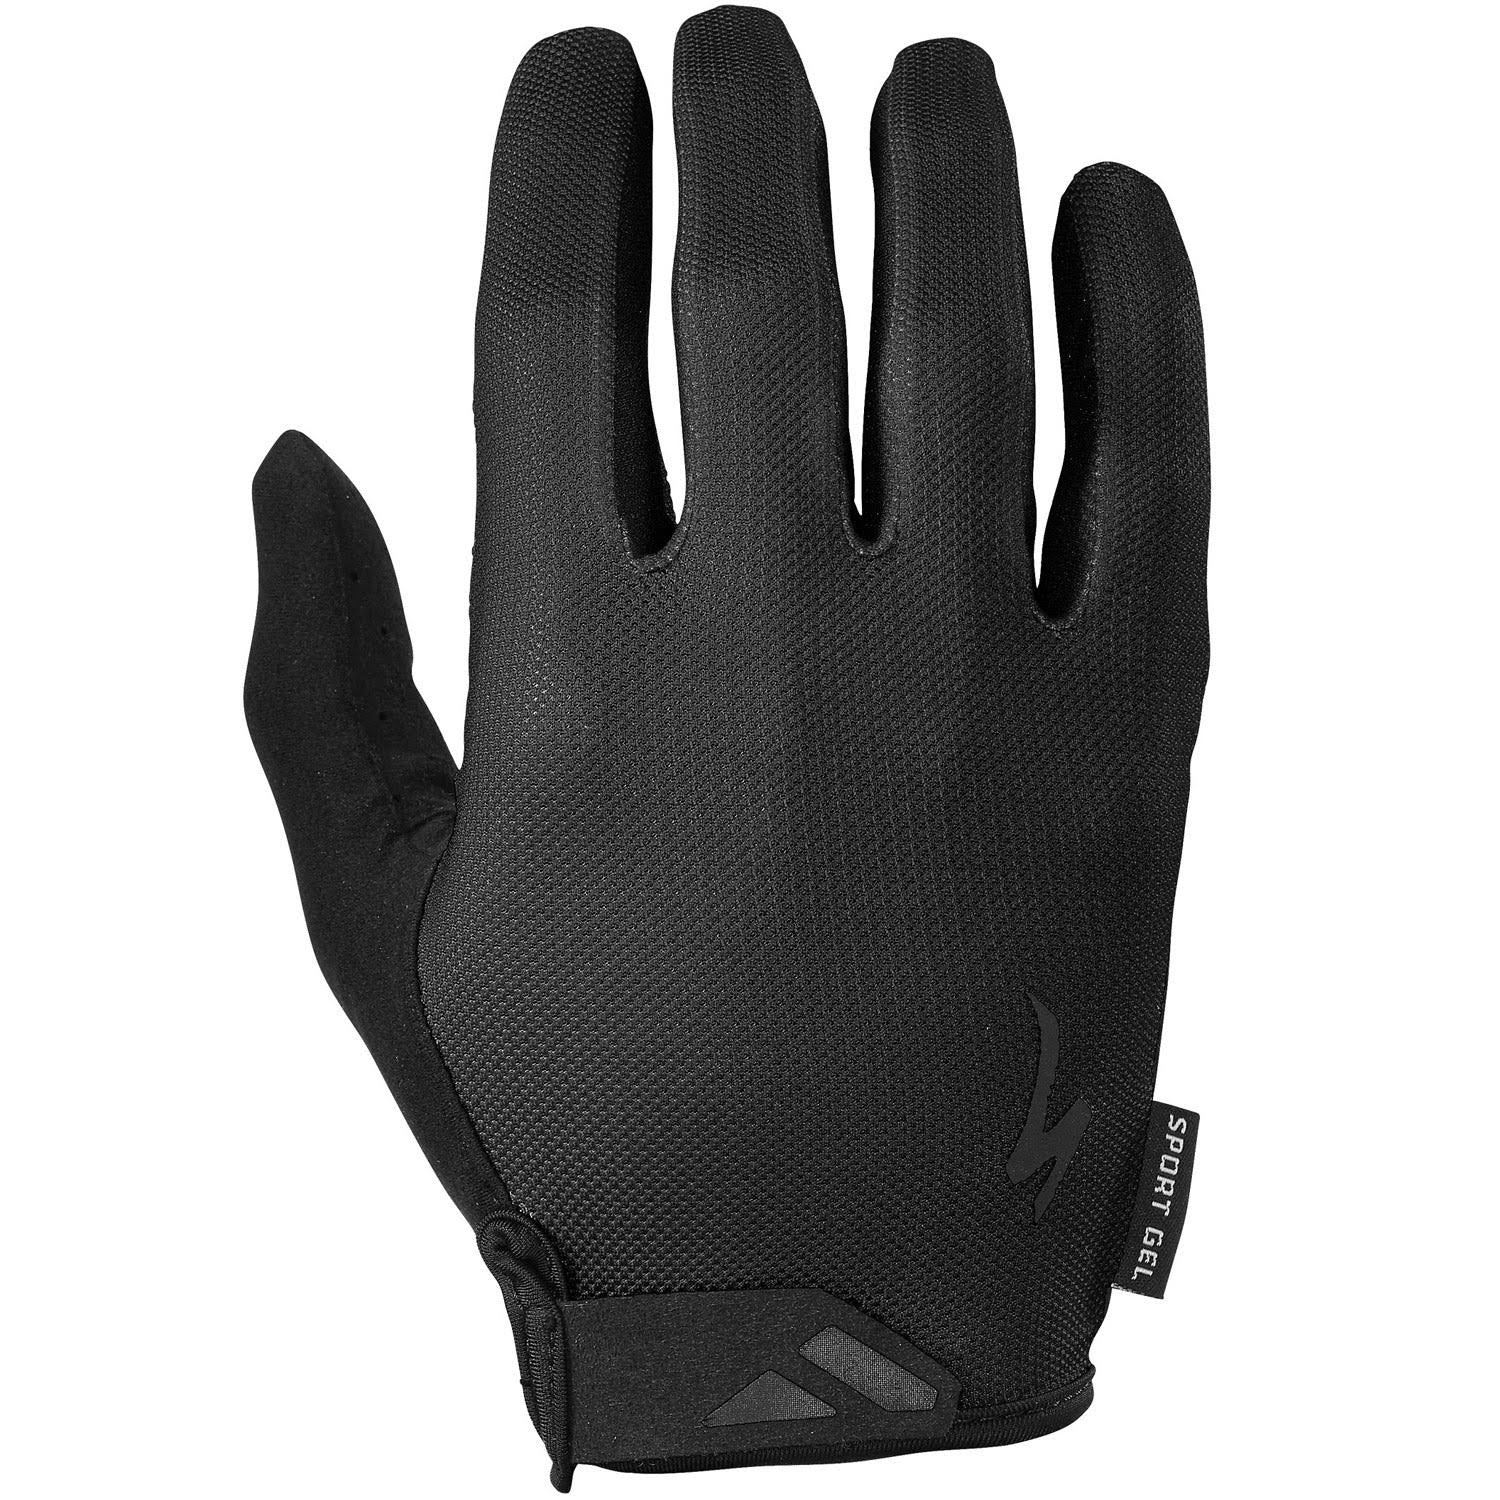 Specialized Body Geometry Sport Gel Long Finger Gloves